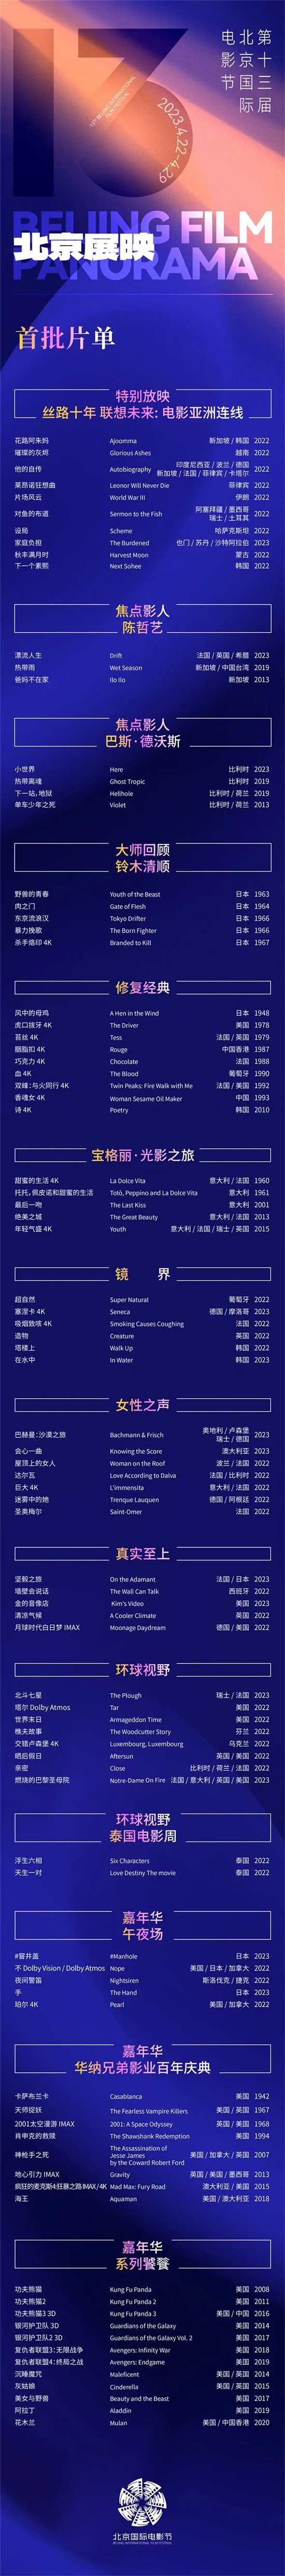 第十三届北京国际电影节4月22日至29日举办 张艺谋任天坛奖评委会主席